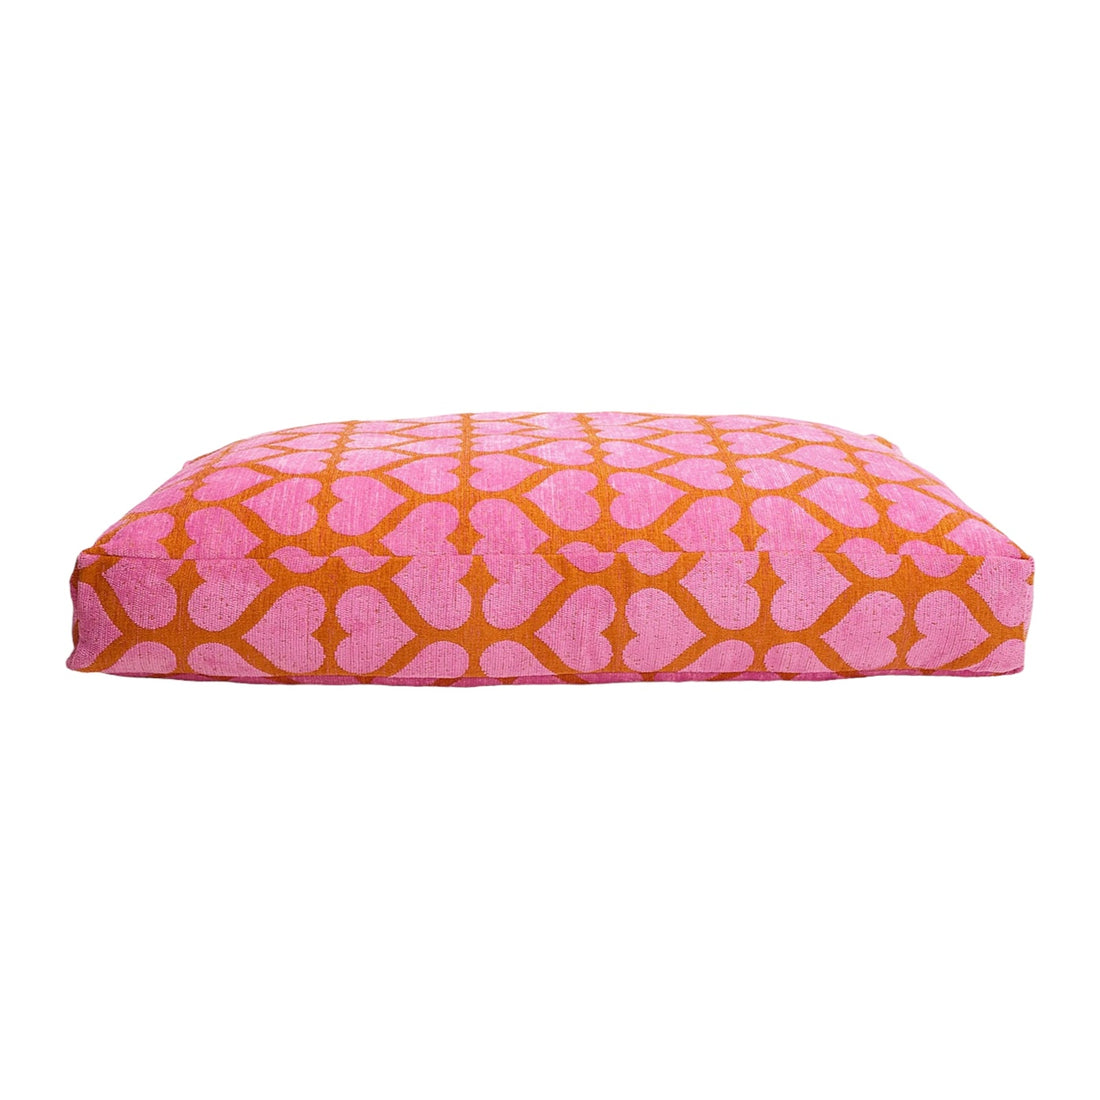 Heart Dog Bed - Orange/Pink